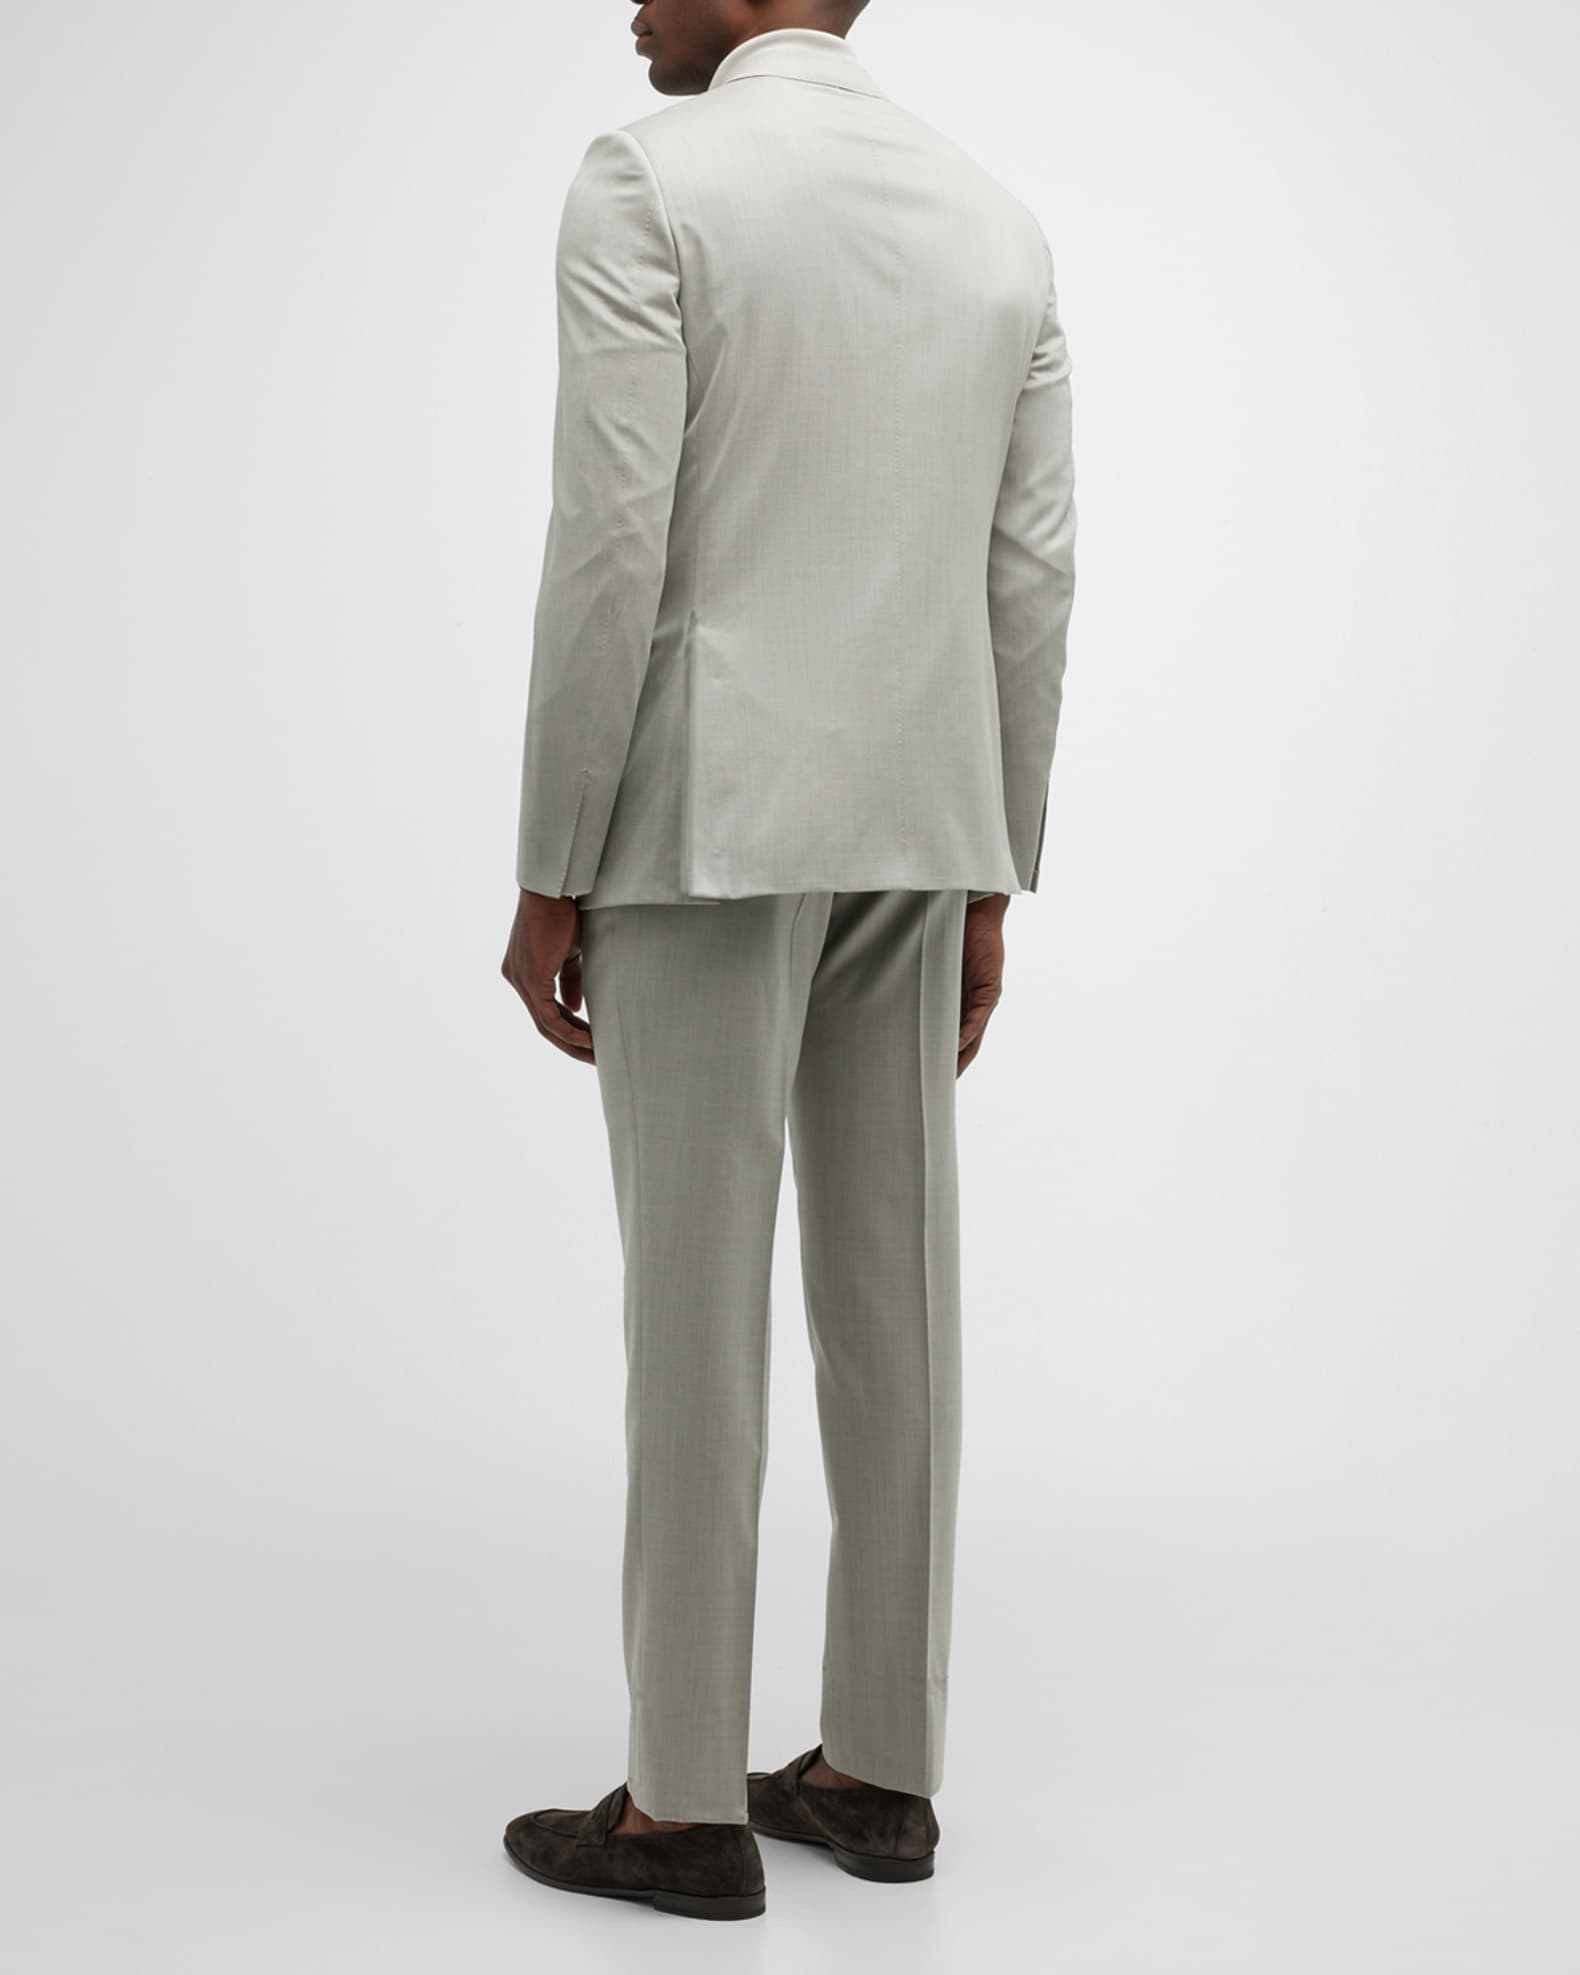 ZEGNA Men's Classic Solid Wool Suit | Neiman Marcus